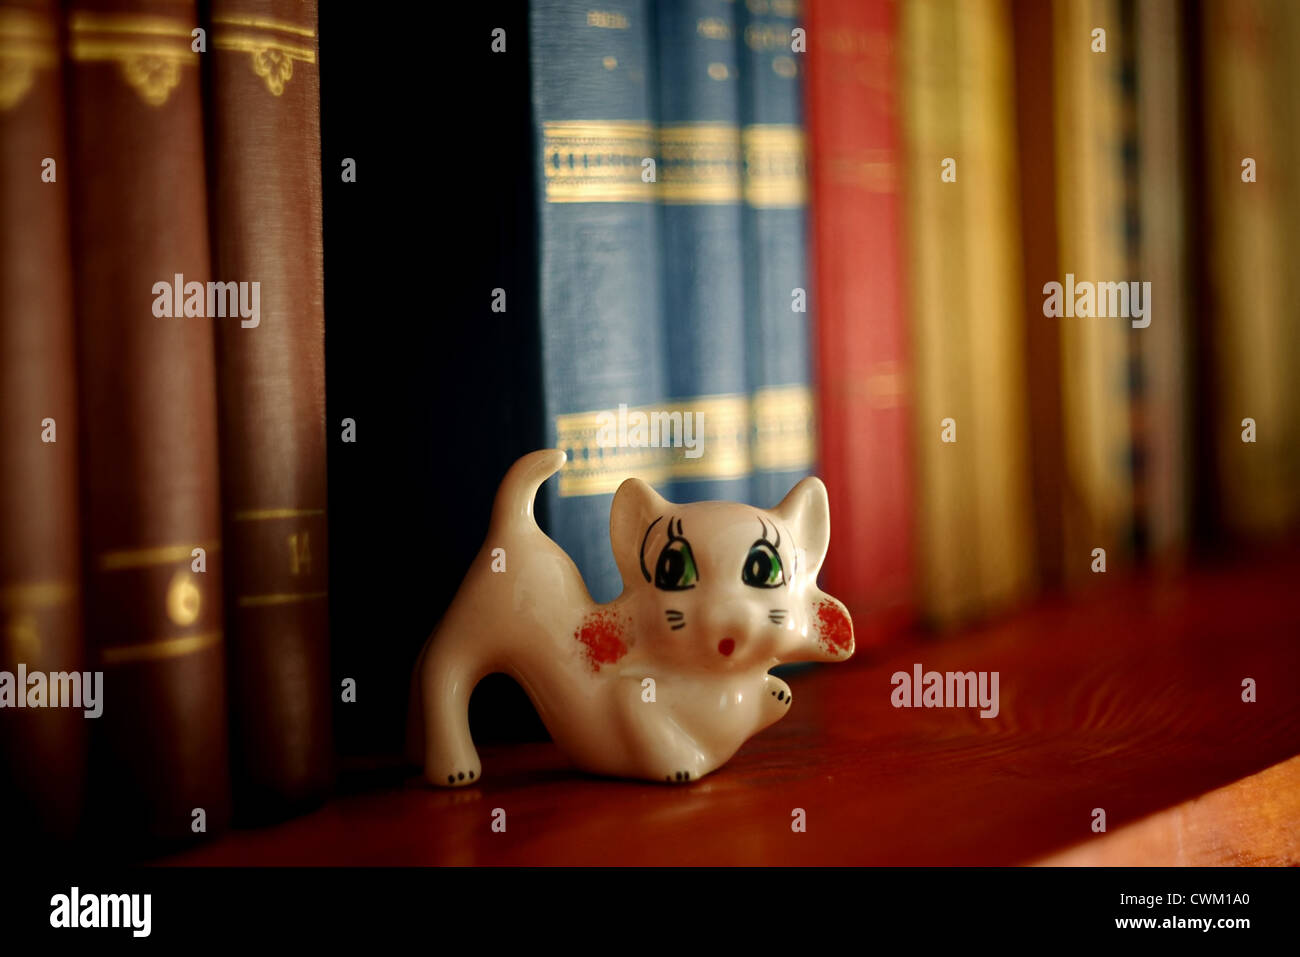 süße Katze Schmuckstück in Bücher aus der Bibliothek Stockfoto